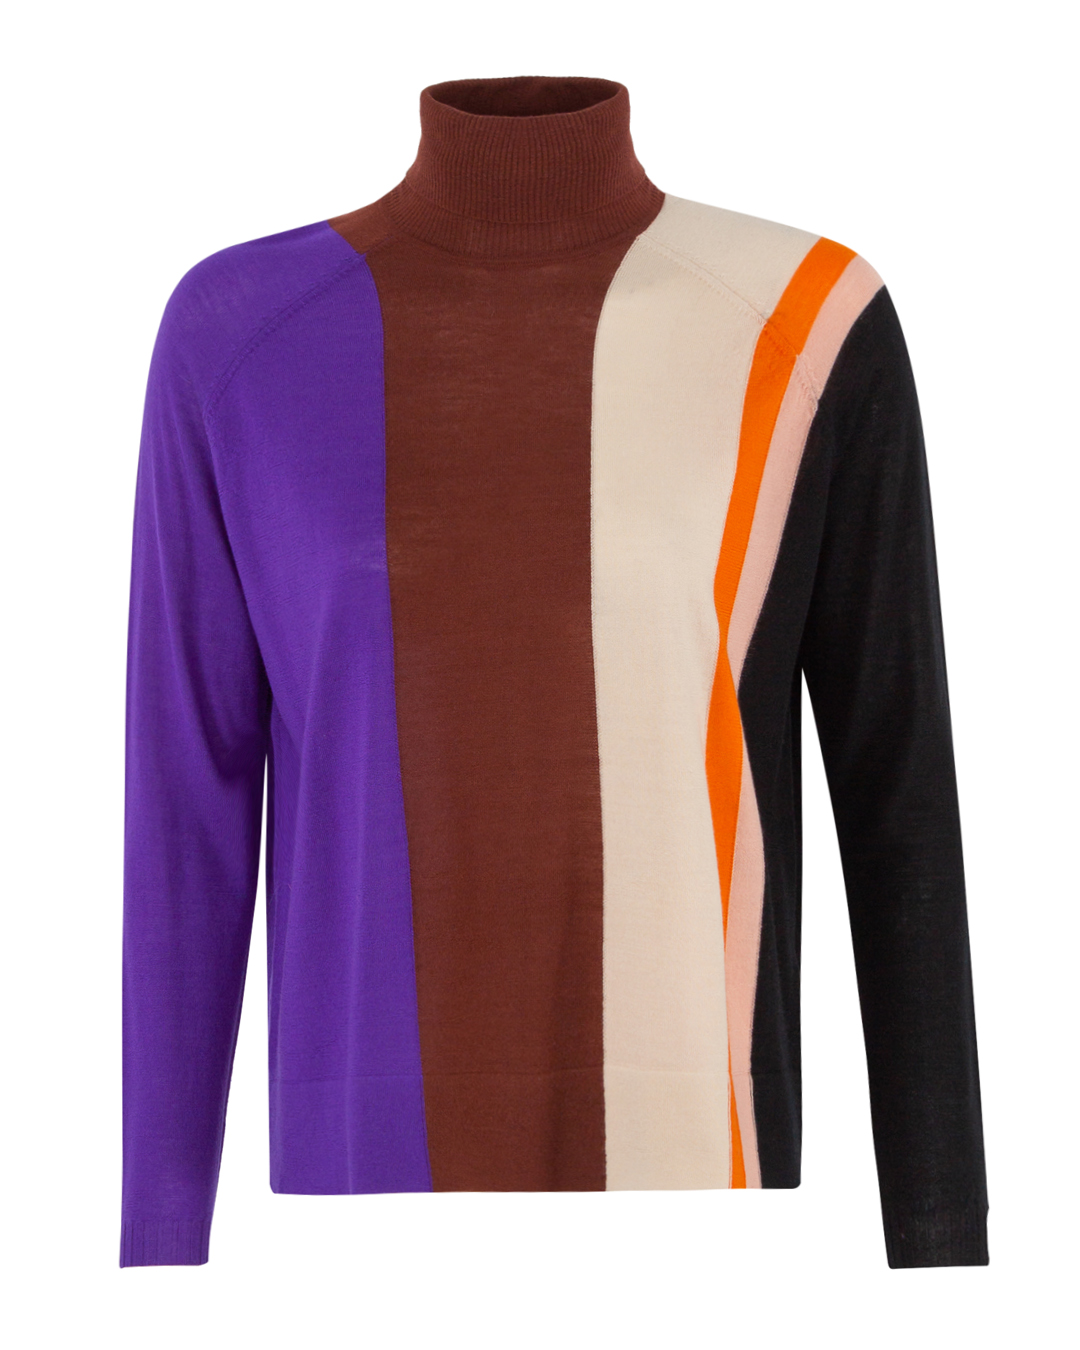 свитер PSOPHIA 501PUL1689 коричневый+фиолетовый+принт l, размер l, цвет коричневый+фиолетовый+принт 501PUL1689 коричневый+фиолетовый+принт l - фото 1